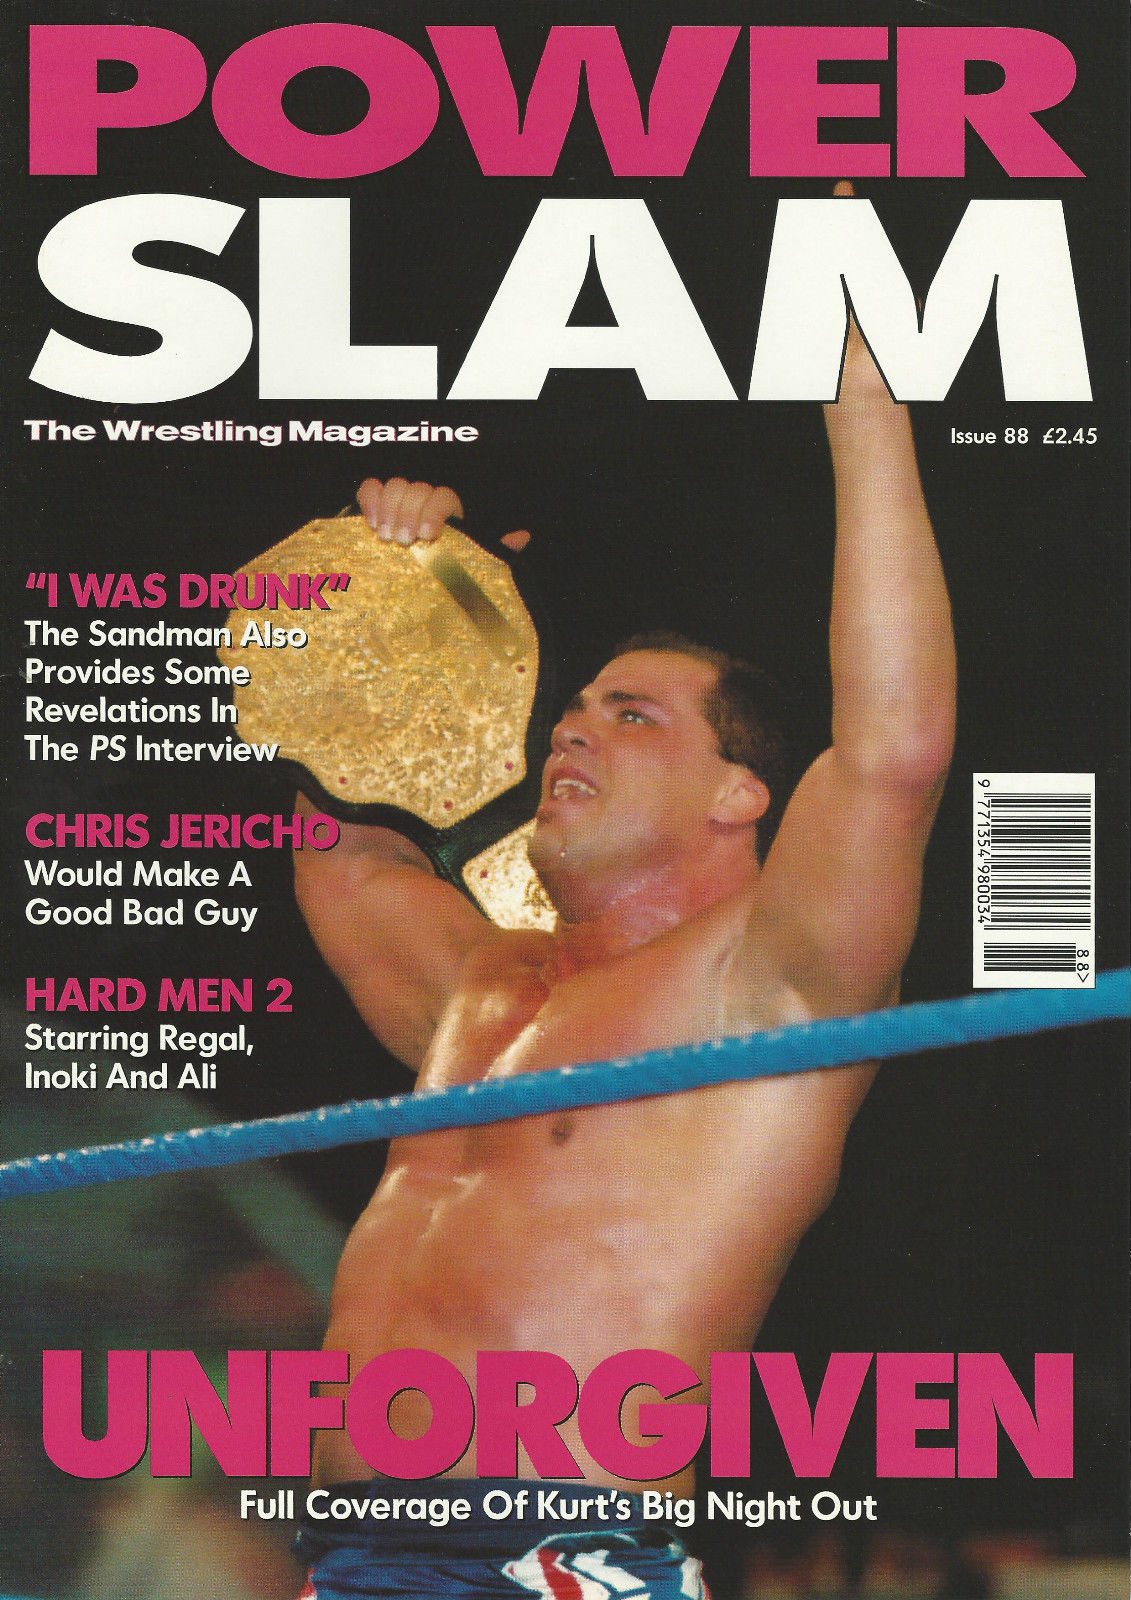 Power Slam Volume 088 November 2001